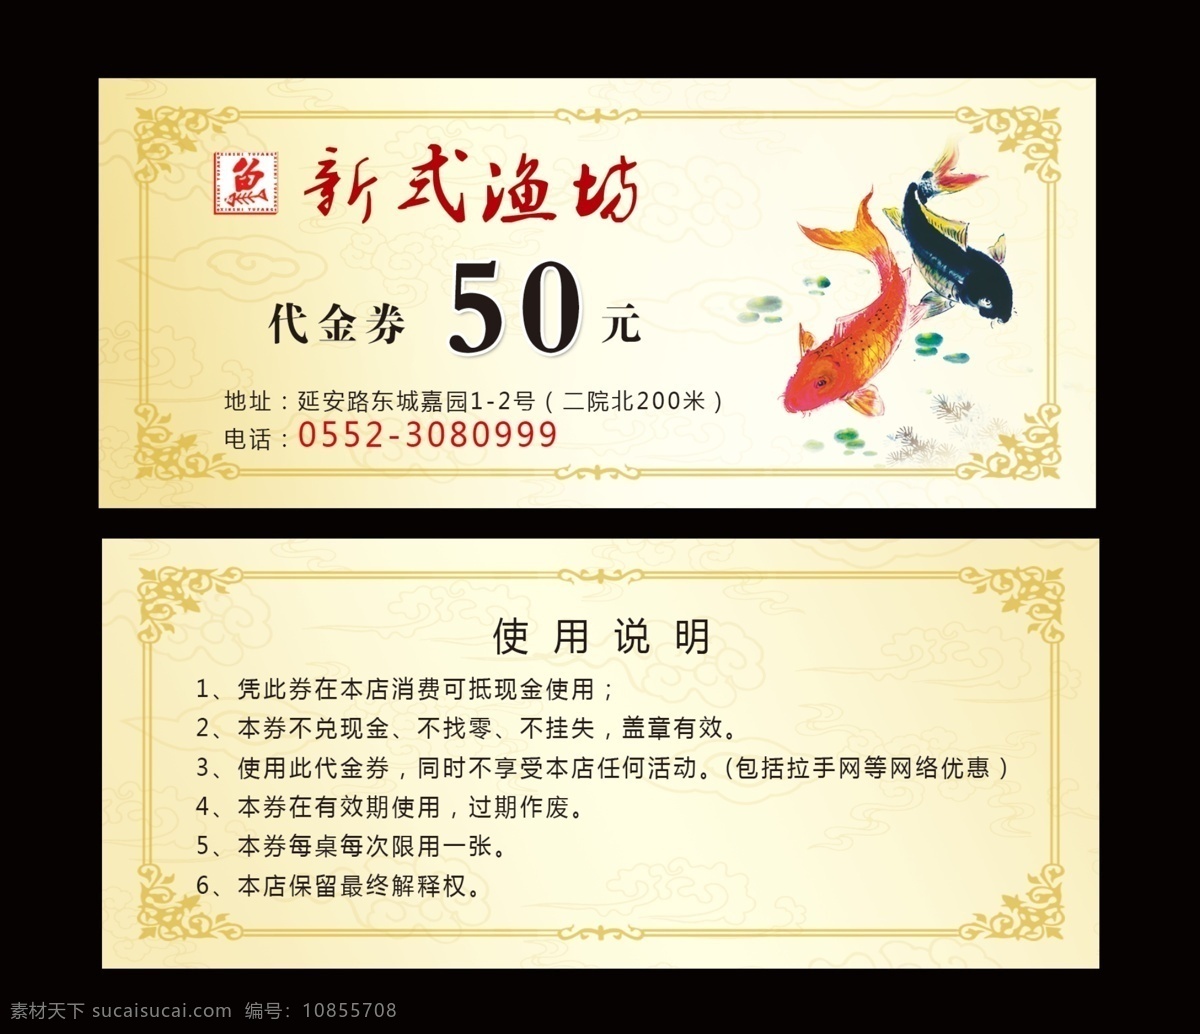 新式 渔 坊 代金券 渔坊代金券 餐饮 中国风 水墨 卡片 渔坊 名片卡片 广告设计模板 源文件